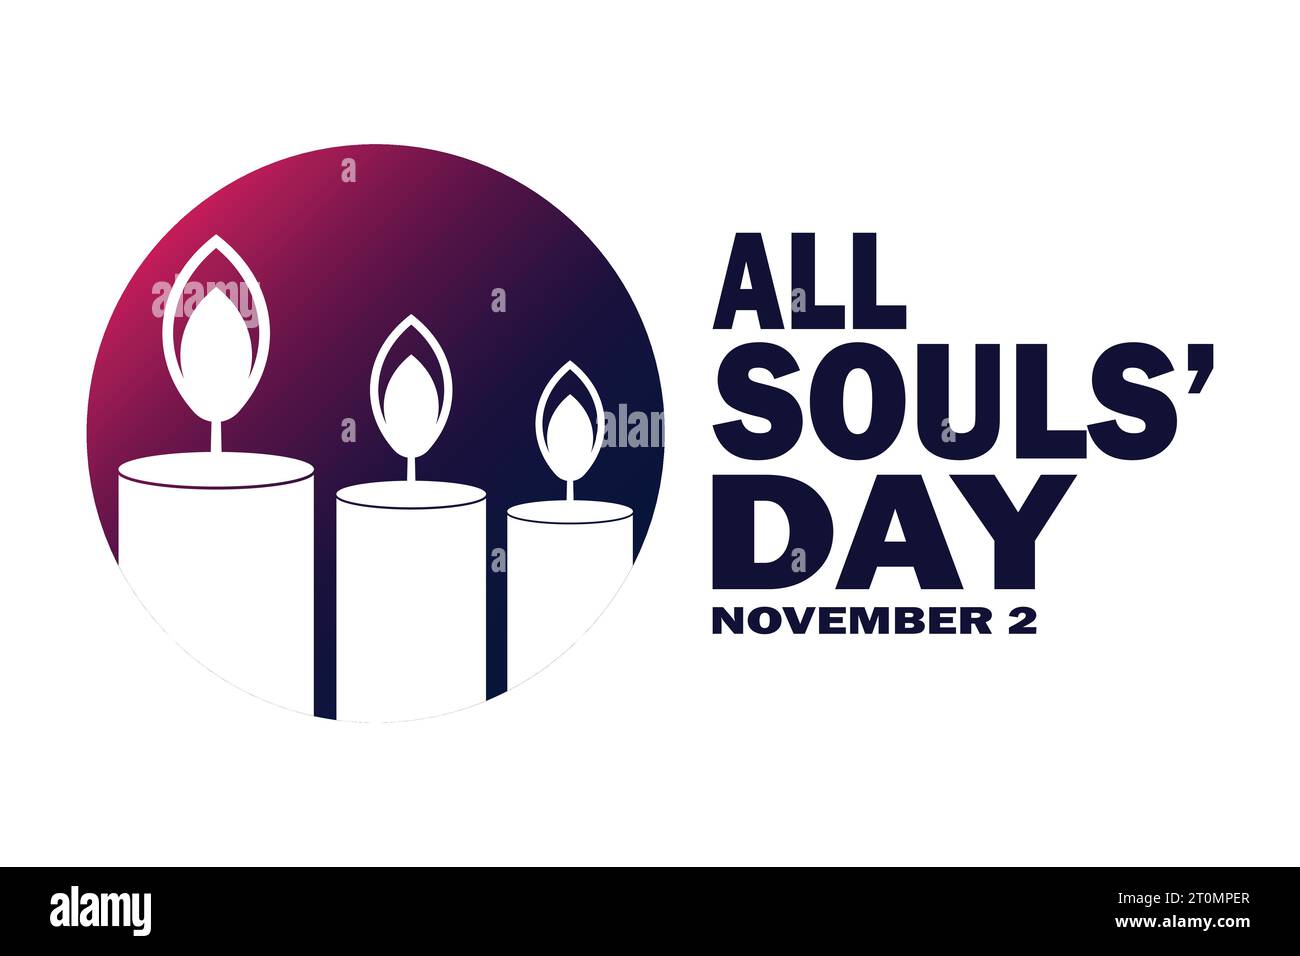 All Souls' Day. November Urlaubskonzept. Vorlage für Hintergrund, Banner, Karte, Poster mit Textbeschriftung. Vektorabbildung. Stock Vektor